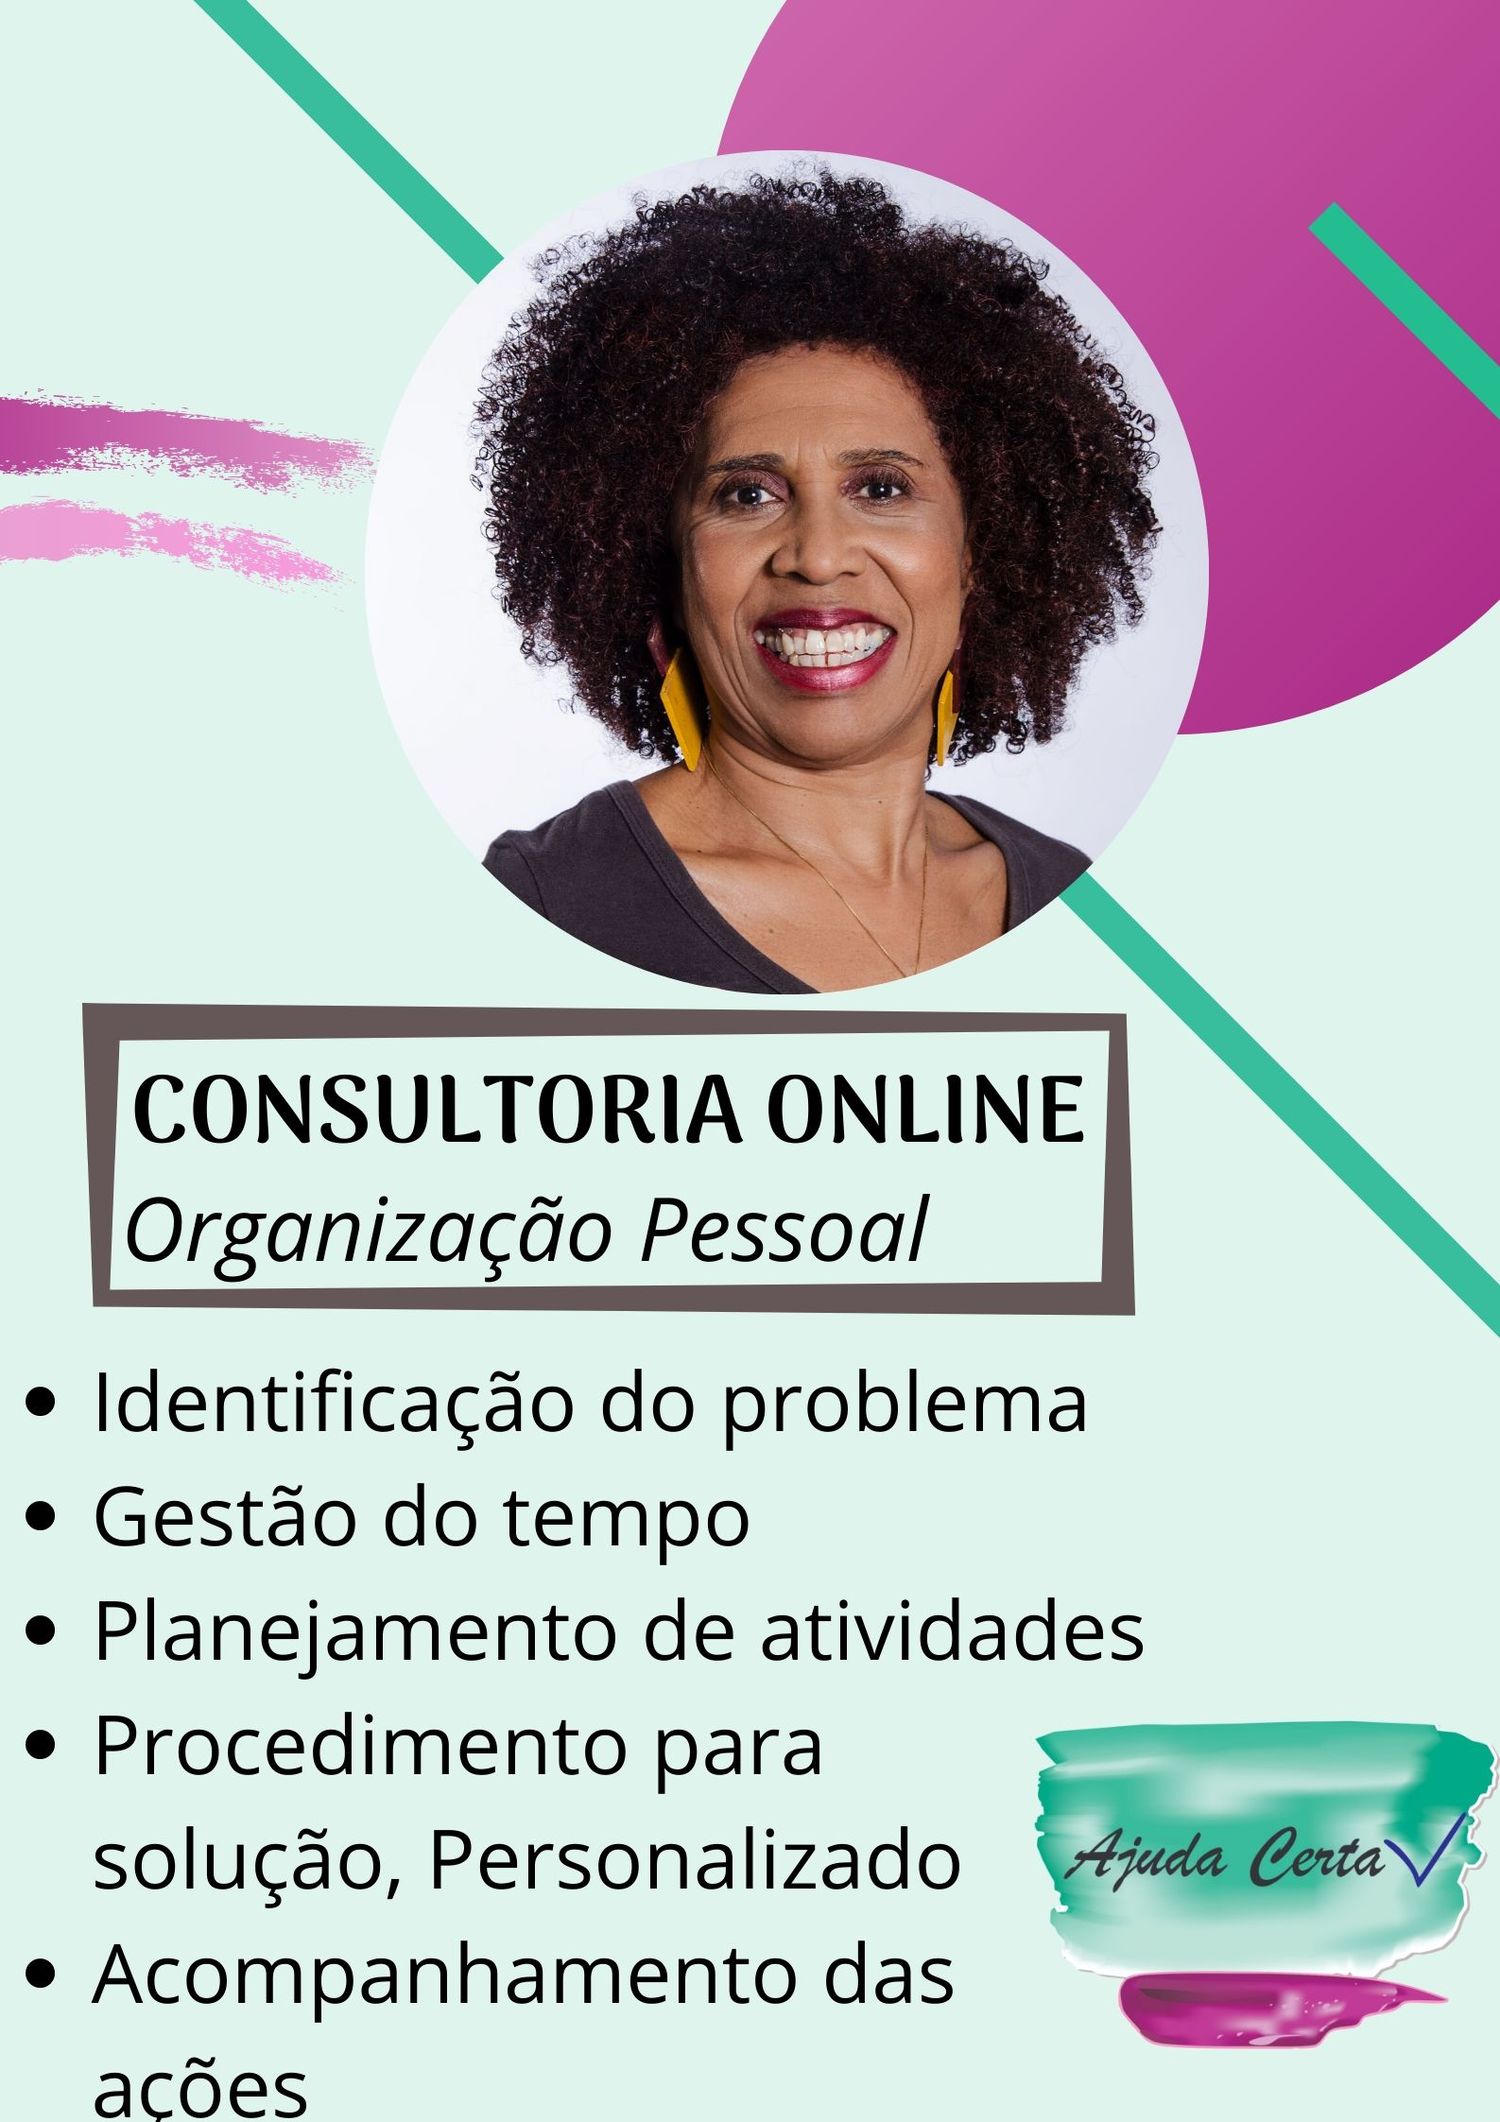 Consultoria Online - Organização Pessoal.